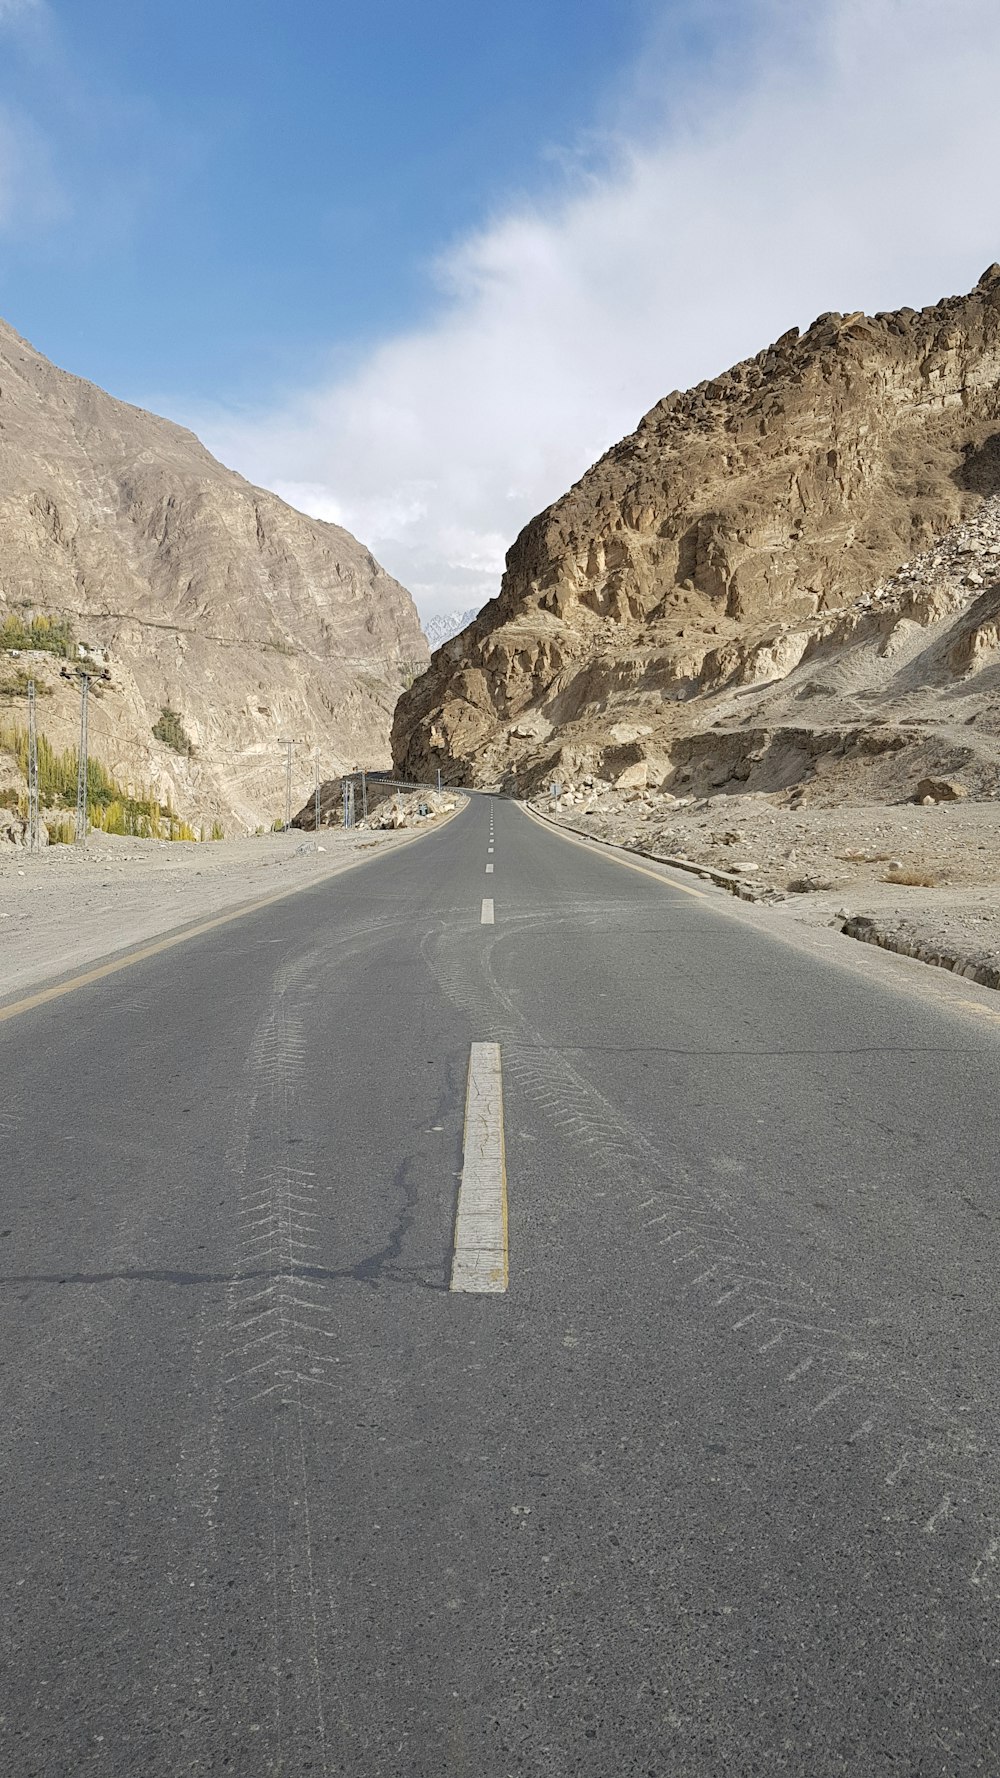 Carretera de concreto gris cerca de la montaña rocosa marrón bajo el cielo blanco durante el día